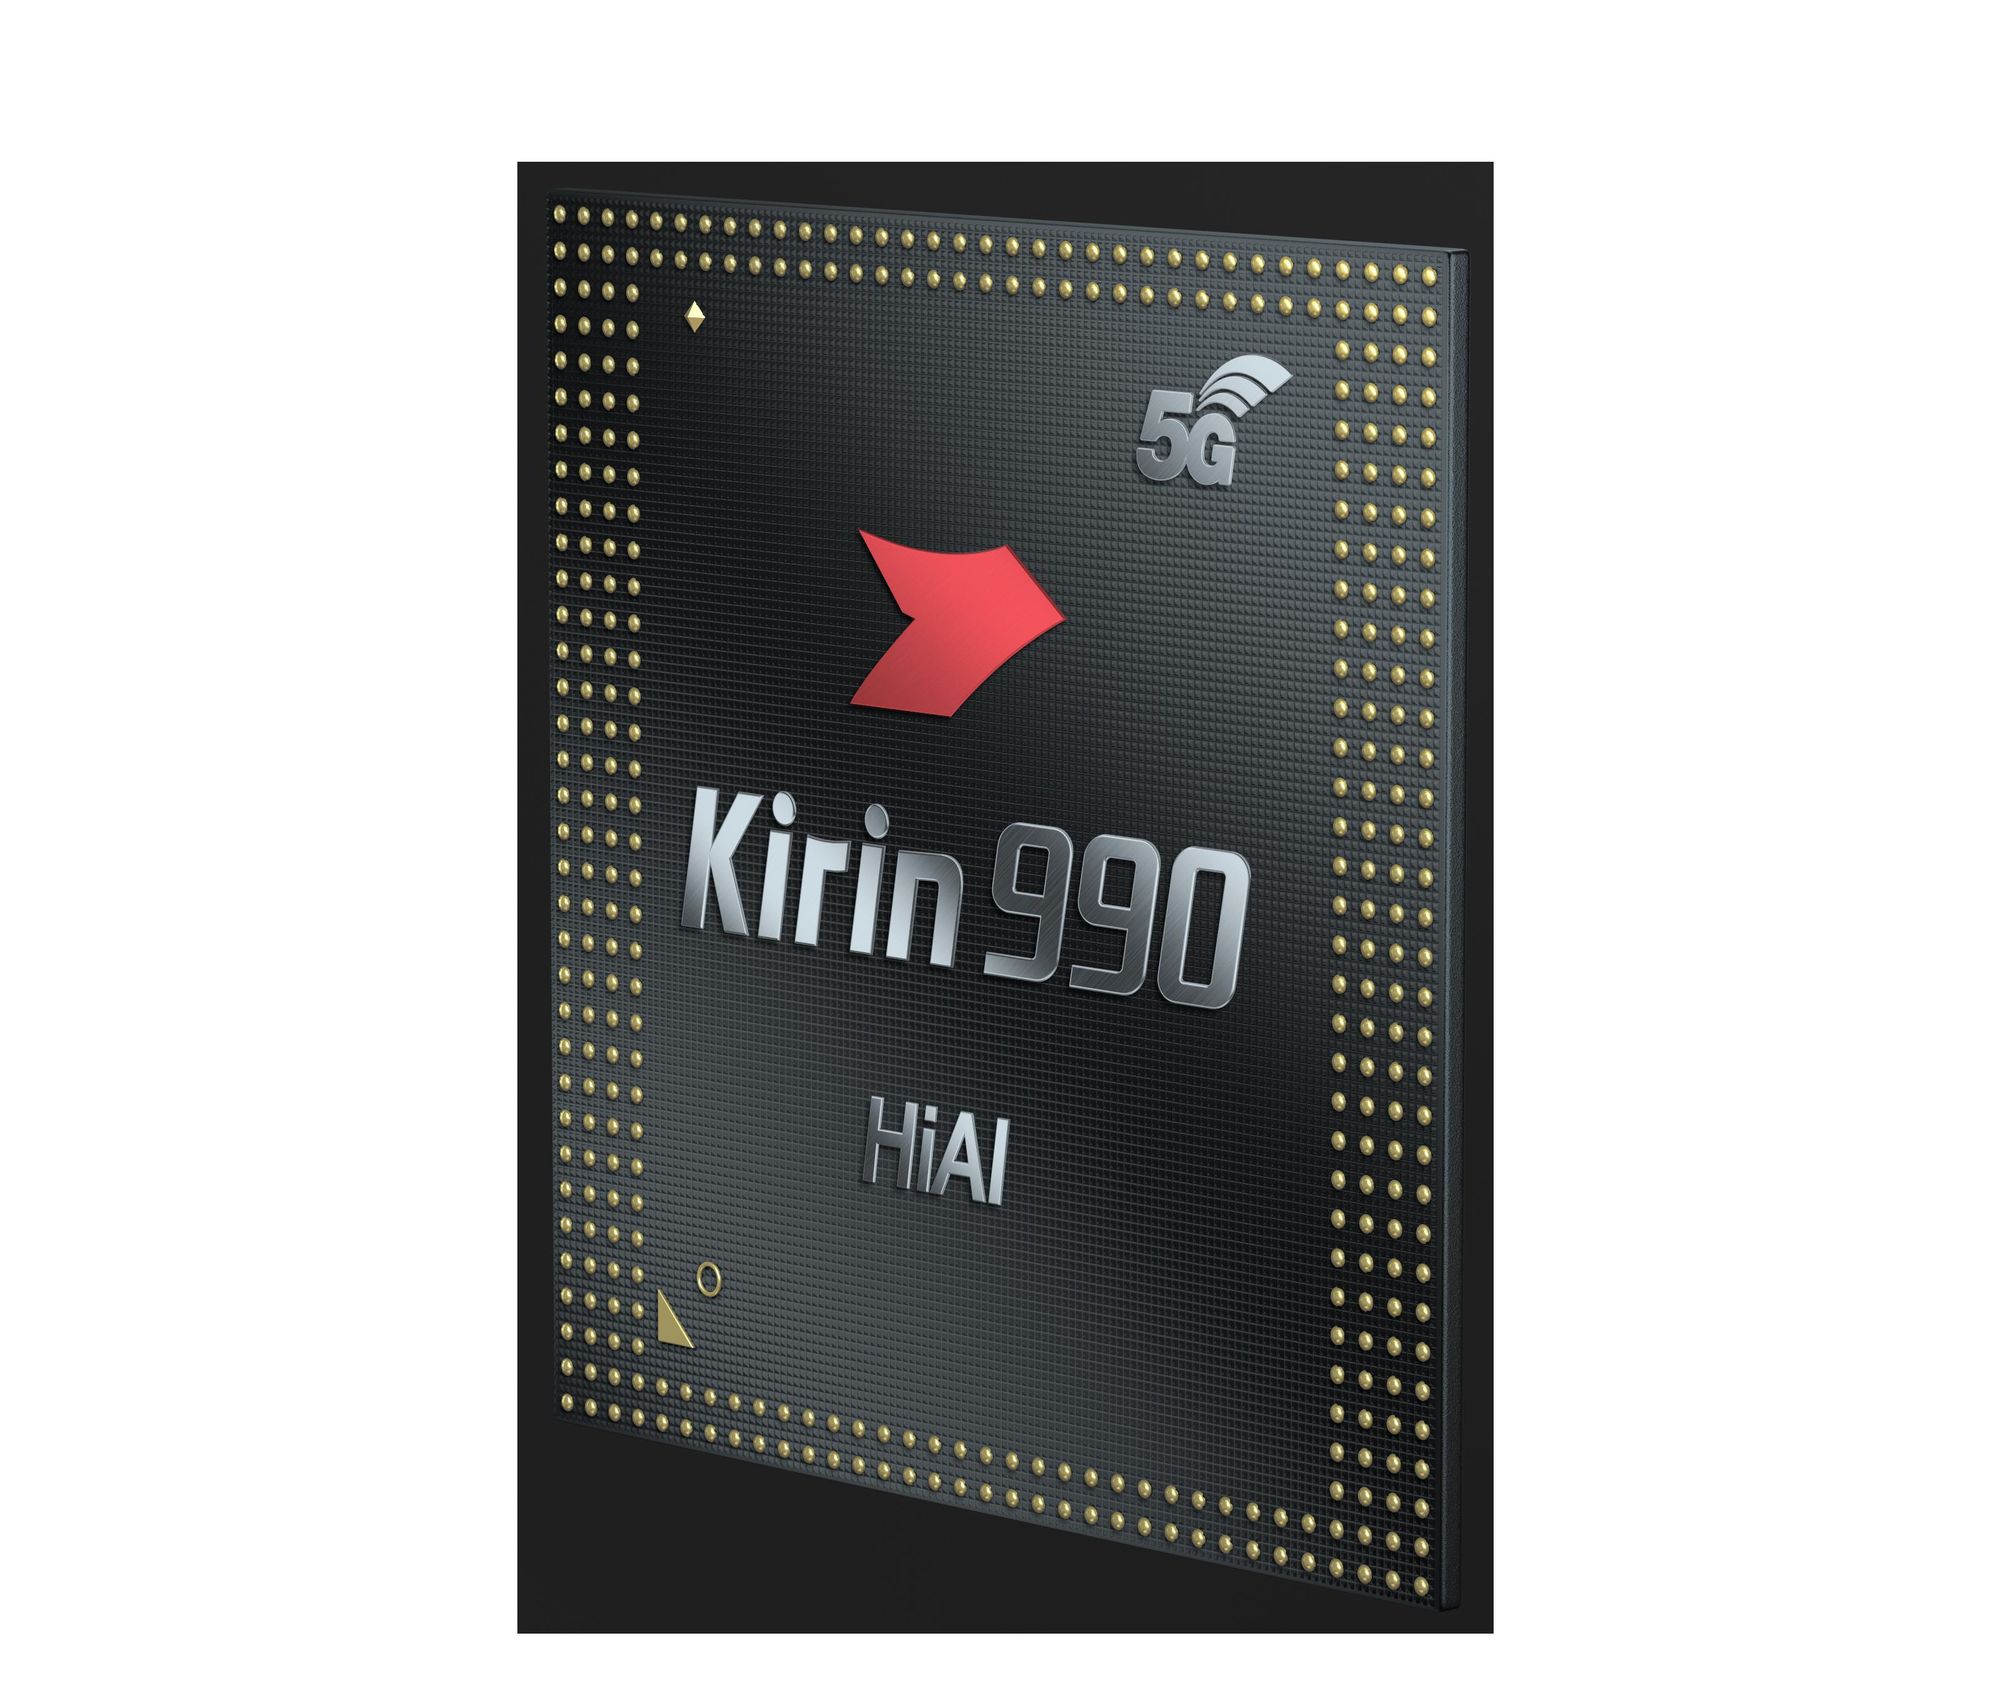 IFA: Huawei präsentiert Kirin 990 und 990 (5G)